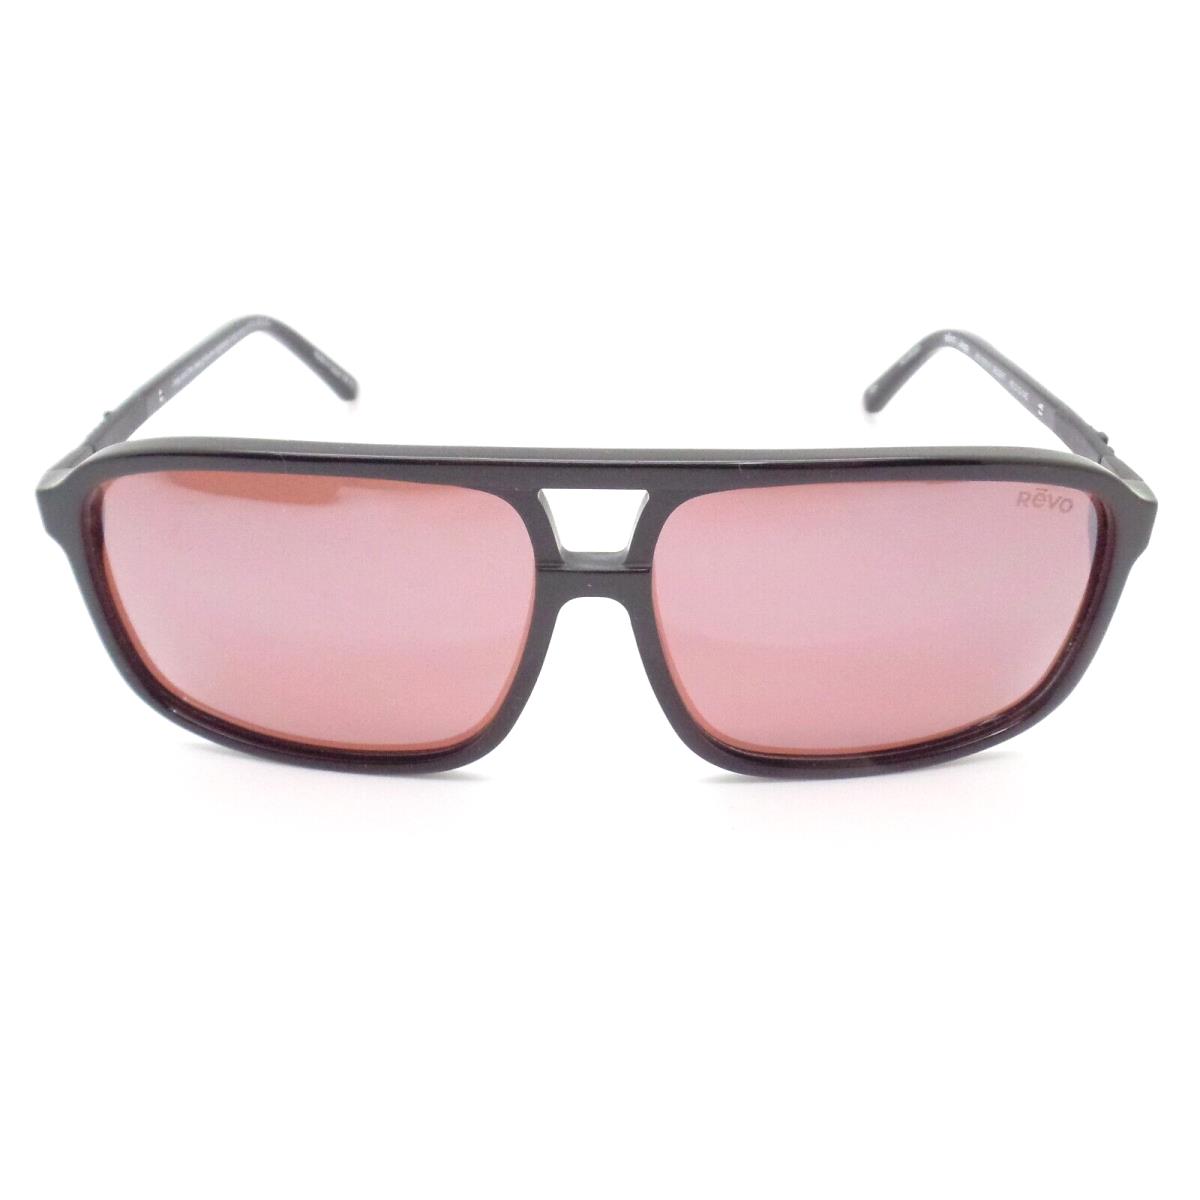 Revo sunglasses Desert - Frame: Gloss Black, Lens: 1